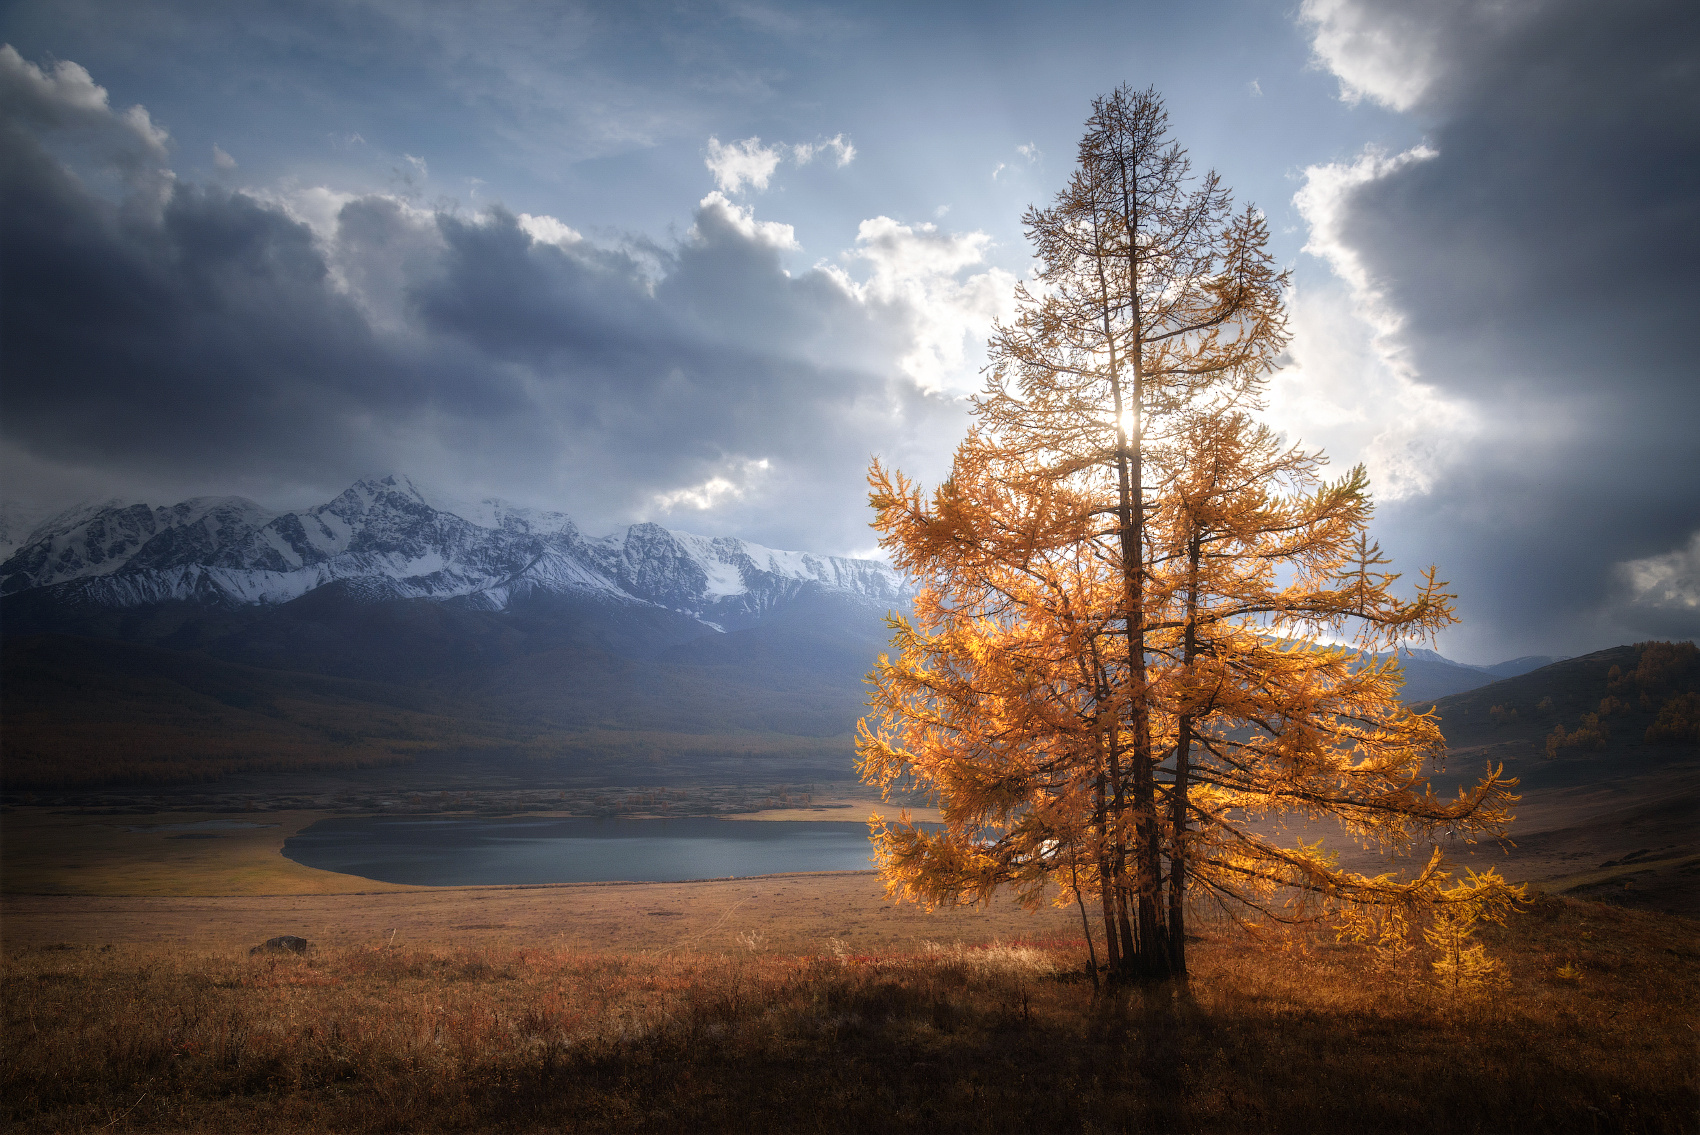 В позолоте алтай горы курайская степь северо-чуйский хребет лиственницы золотая осень сентябрь горный пейзаж ештыкель джангысколь контраст свет